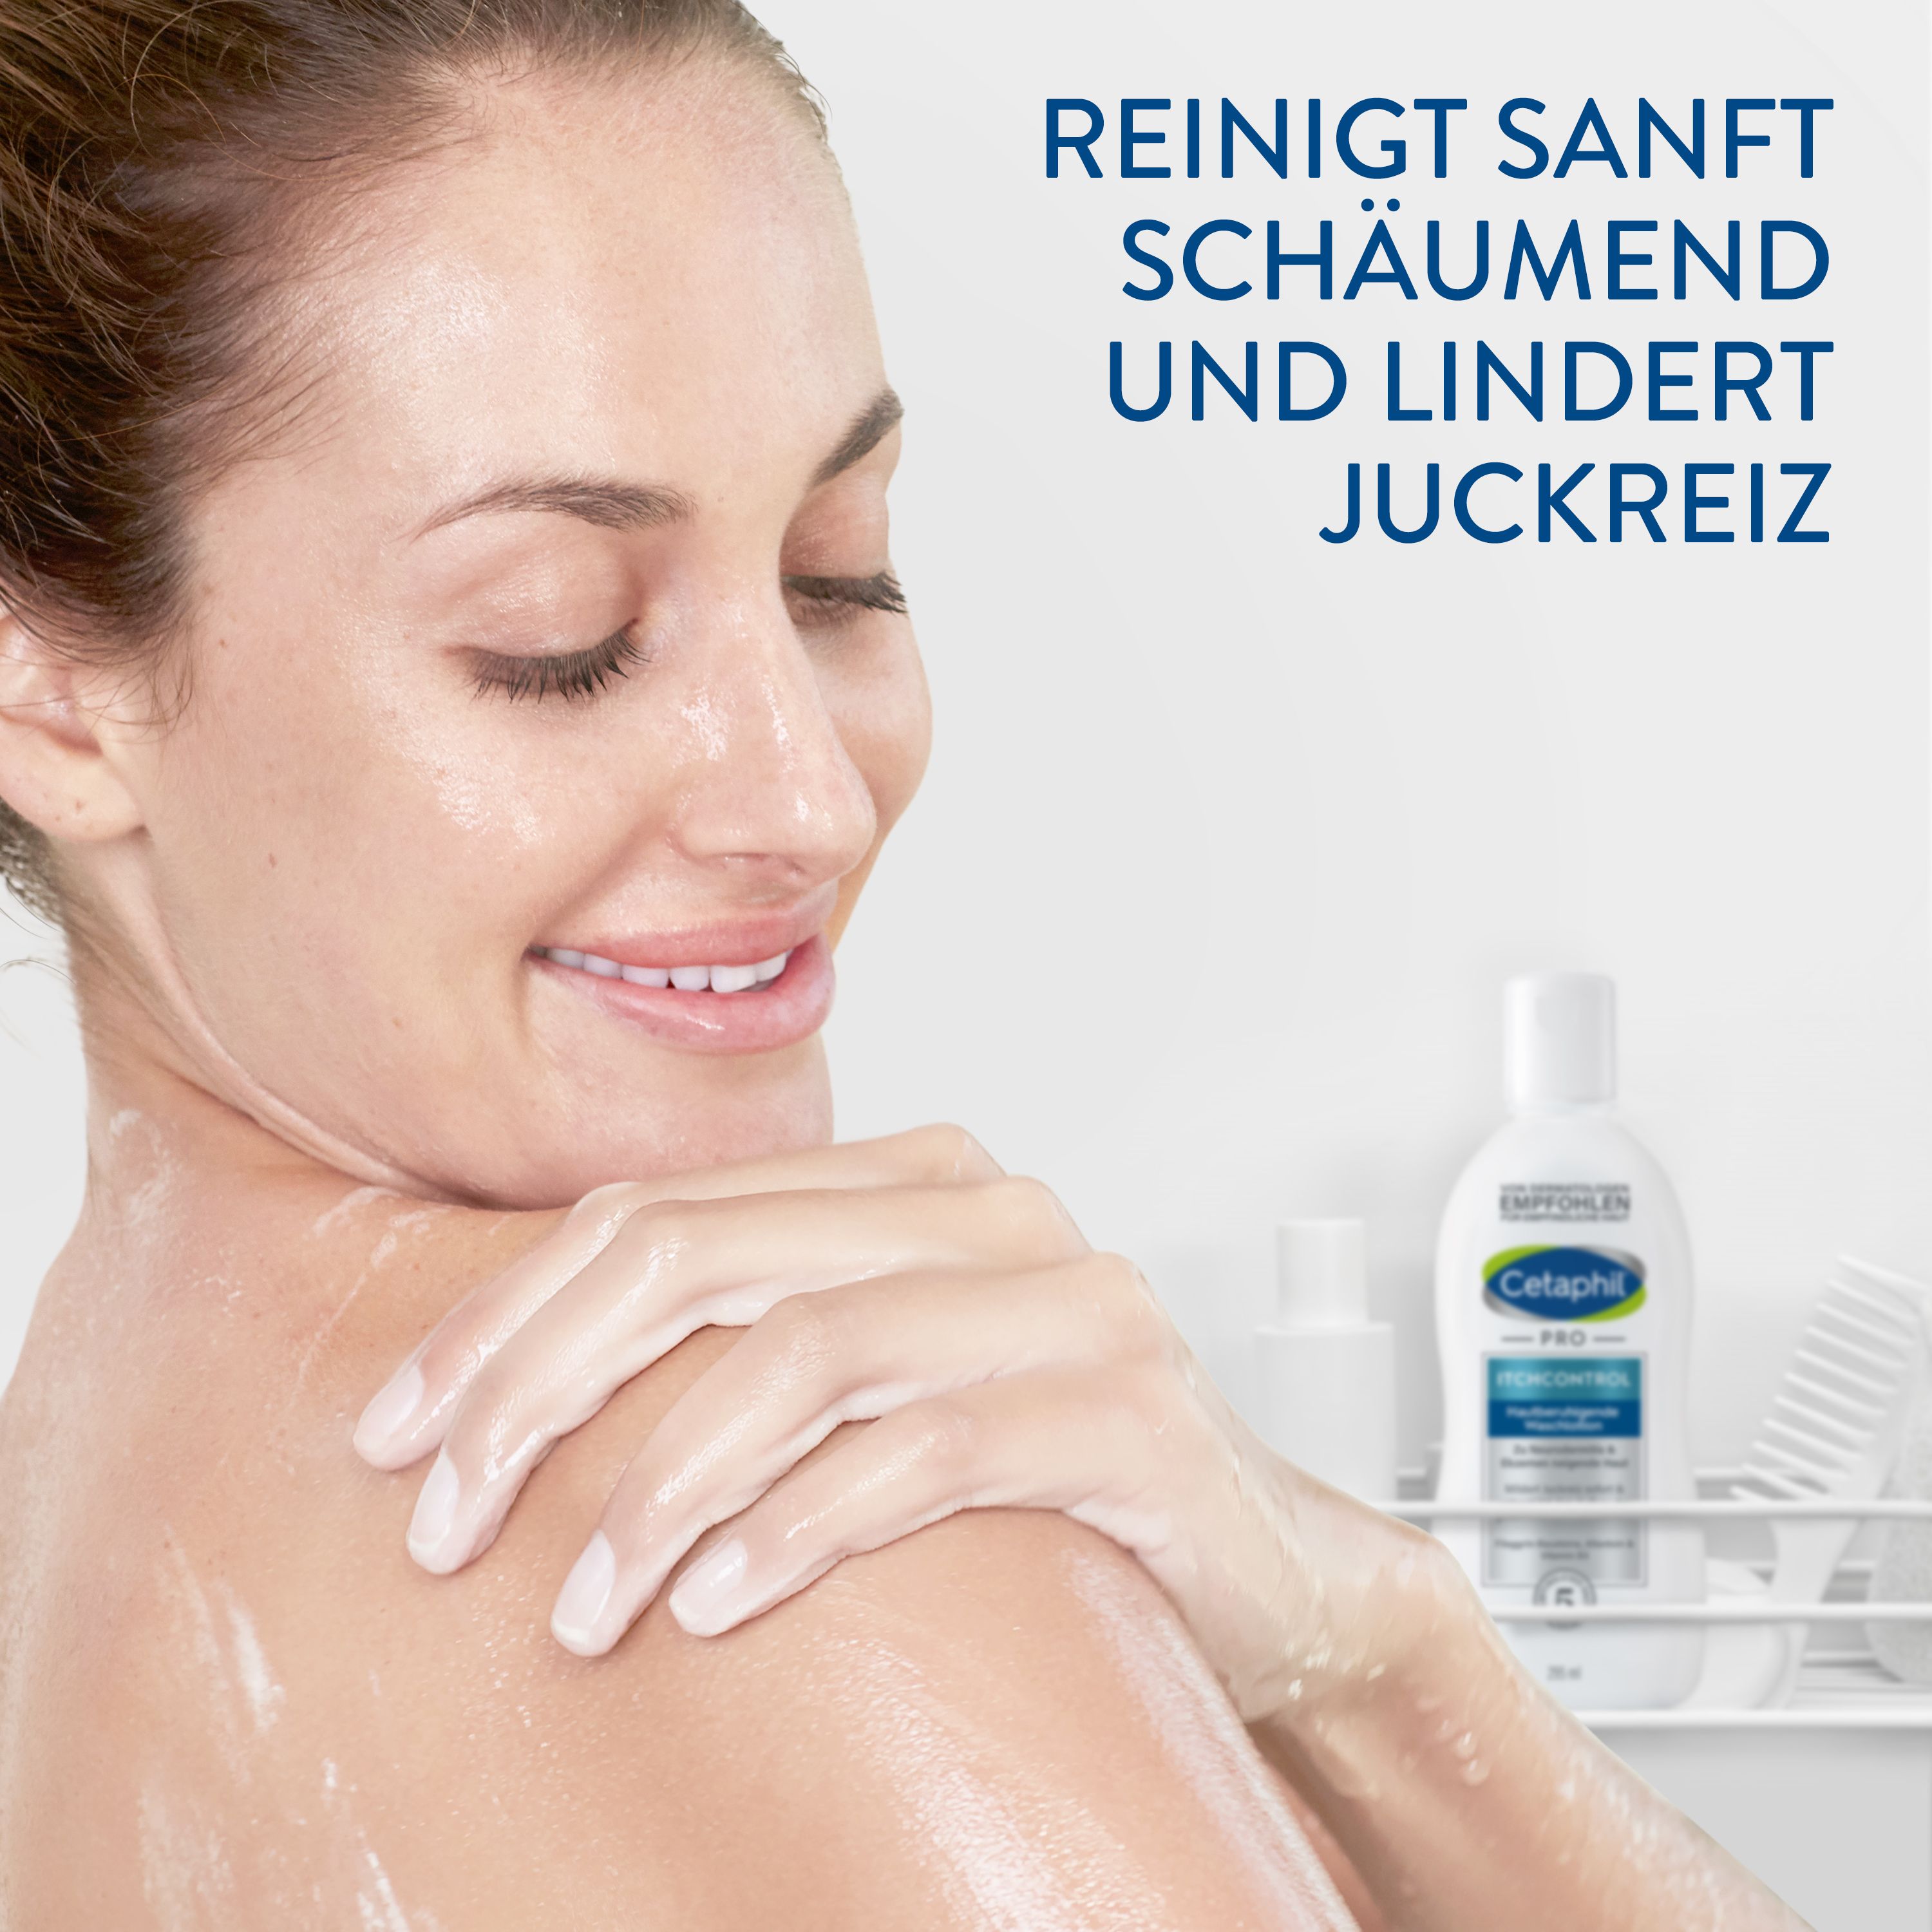 CETAPHIL PRO ItchControl Hautberuhigende Waschlotion für trockene, juckende Haut